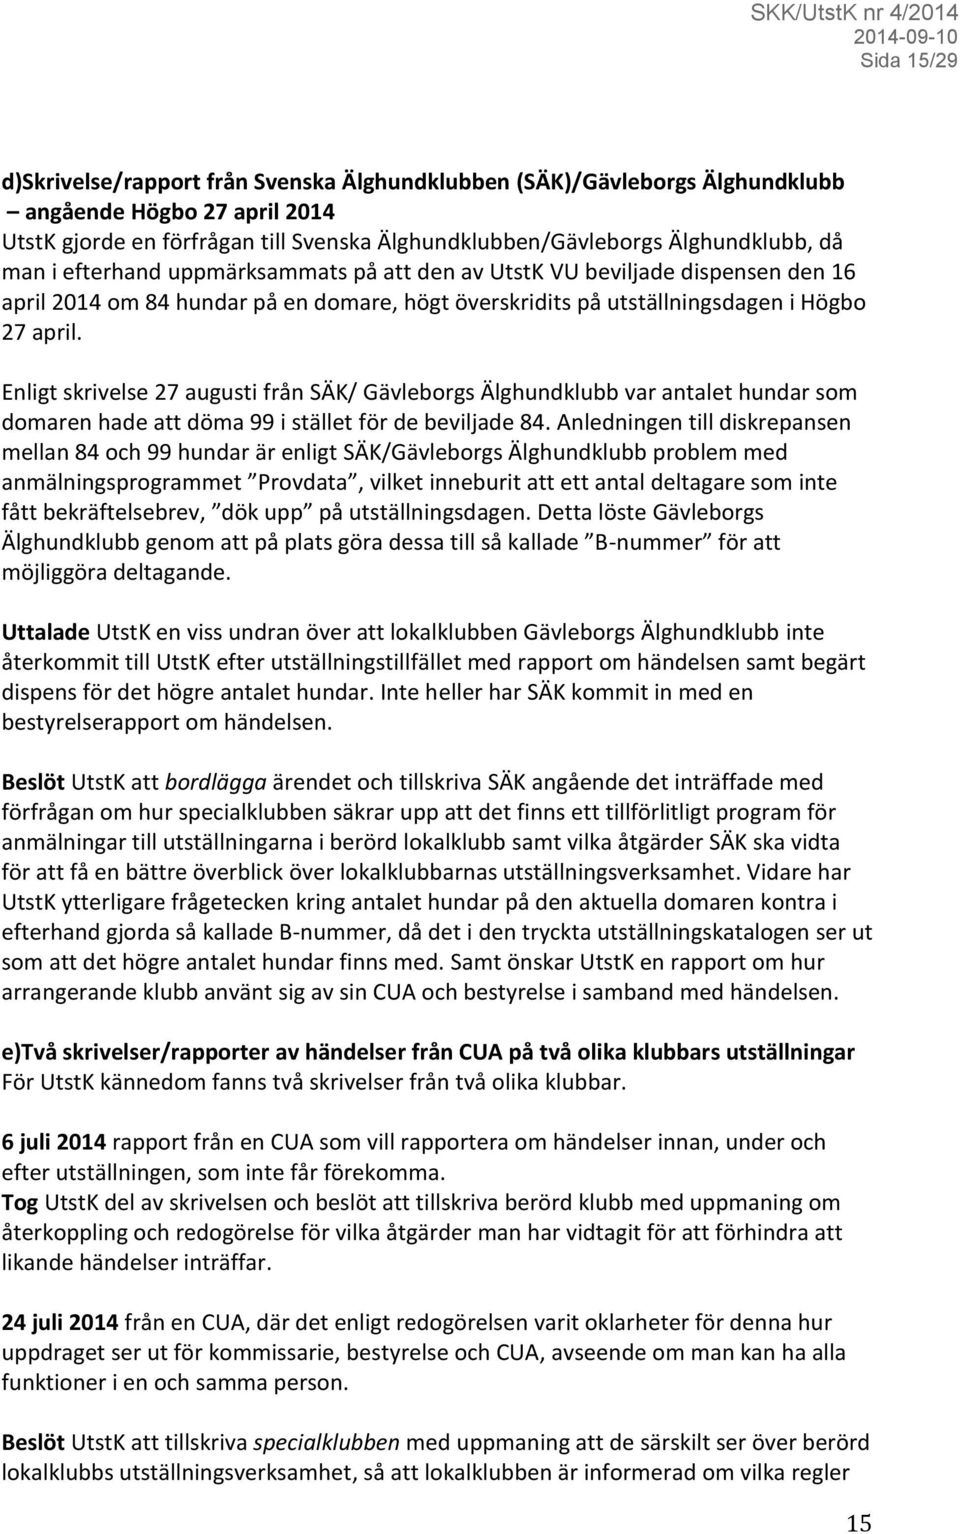 Enligt skrivelse 27 augusti från SÄK/ Gävleborgs Älghundklubb var antalet hundar som domaren hade att döma 99 i stället för de beviljade 84.